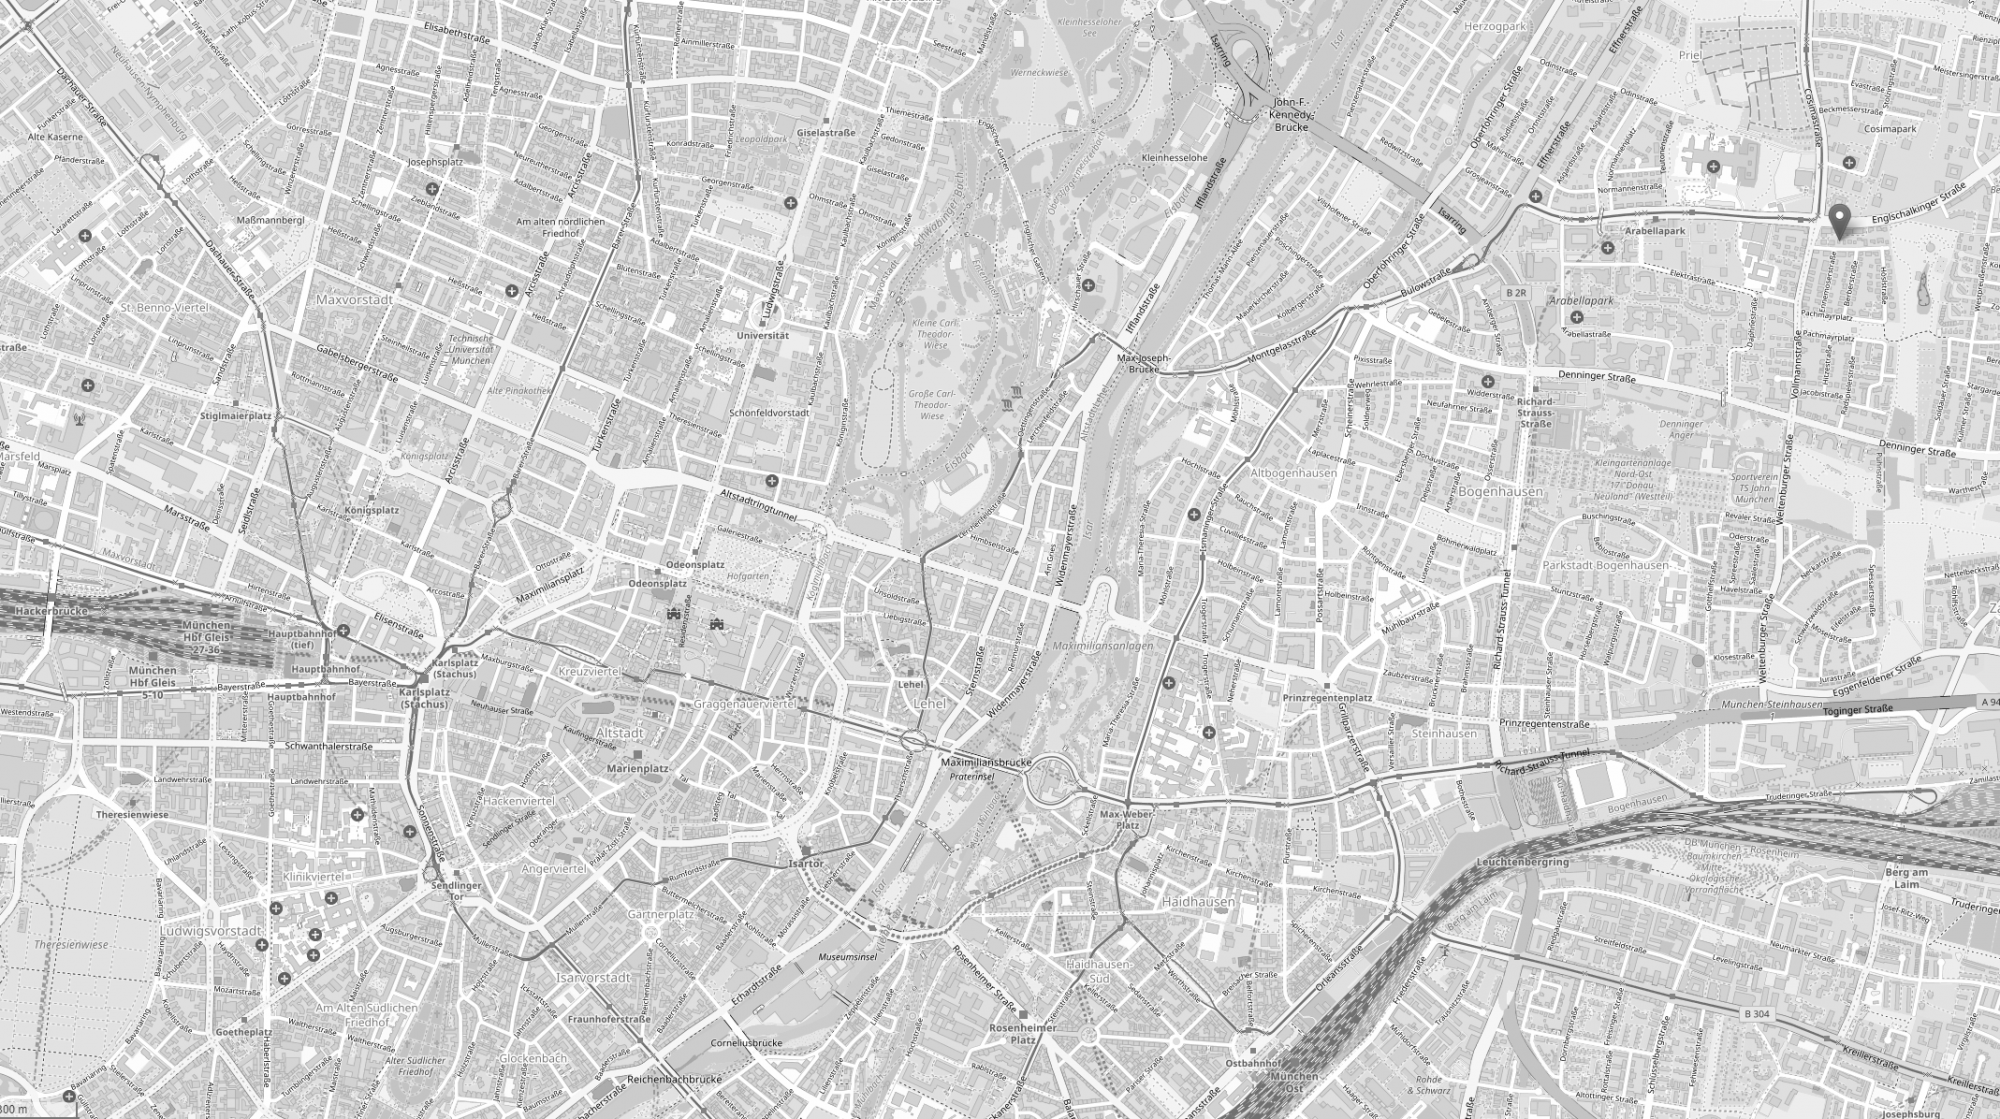 Ein Screenshot von openstreetmap.org, der eine Karte von München zeigt mit einer Markierung am Kanzleistandort.